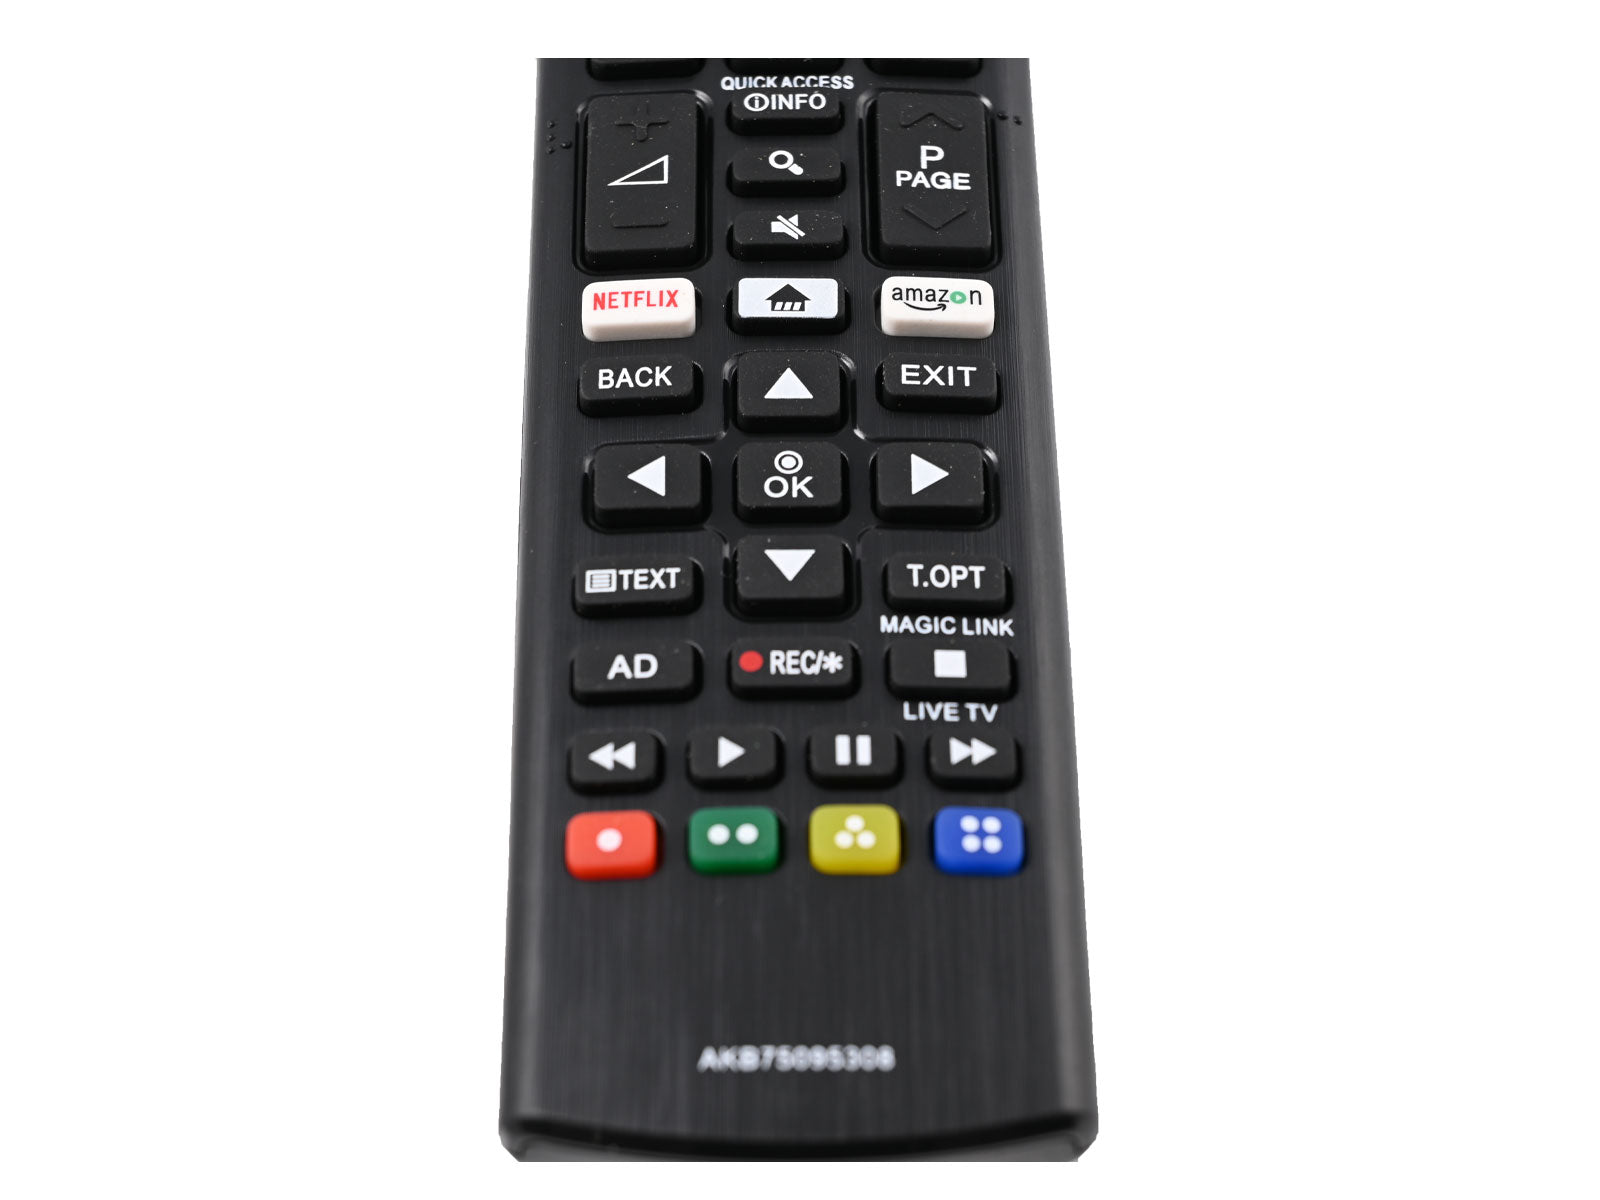 azurano Fernbedienung für LG AKB75095308 für LG Smart TV Netflix & Amazon Video Direkttasten - Bild 5